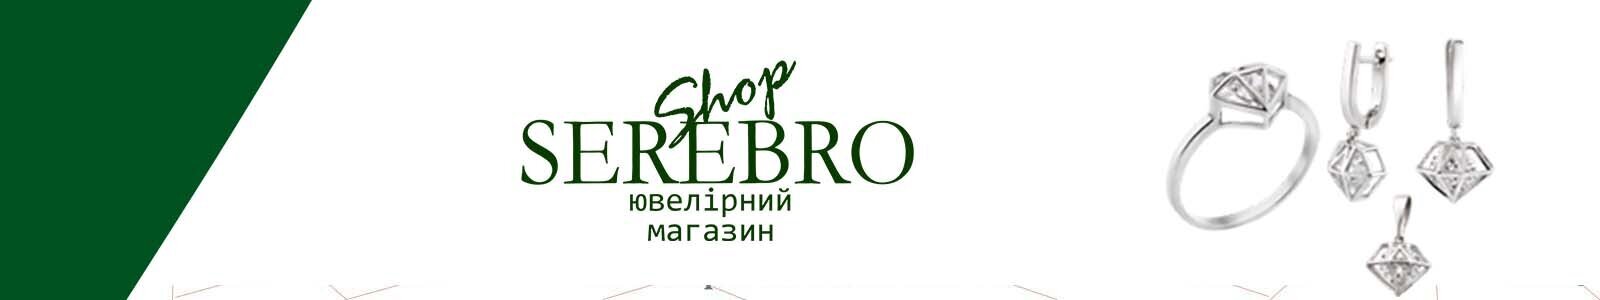 Serebro-shop